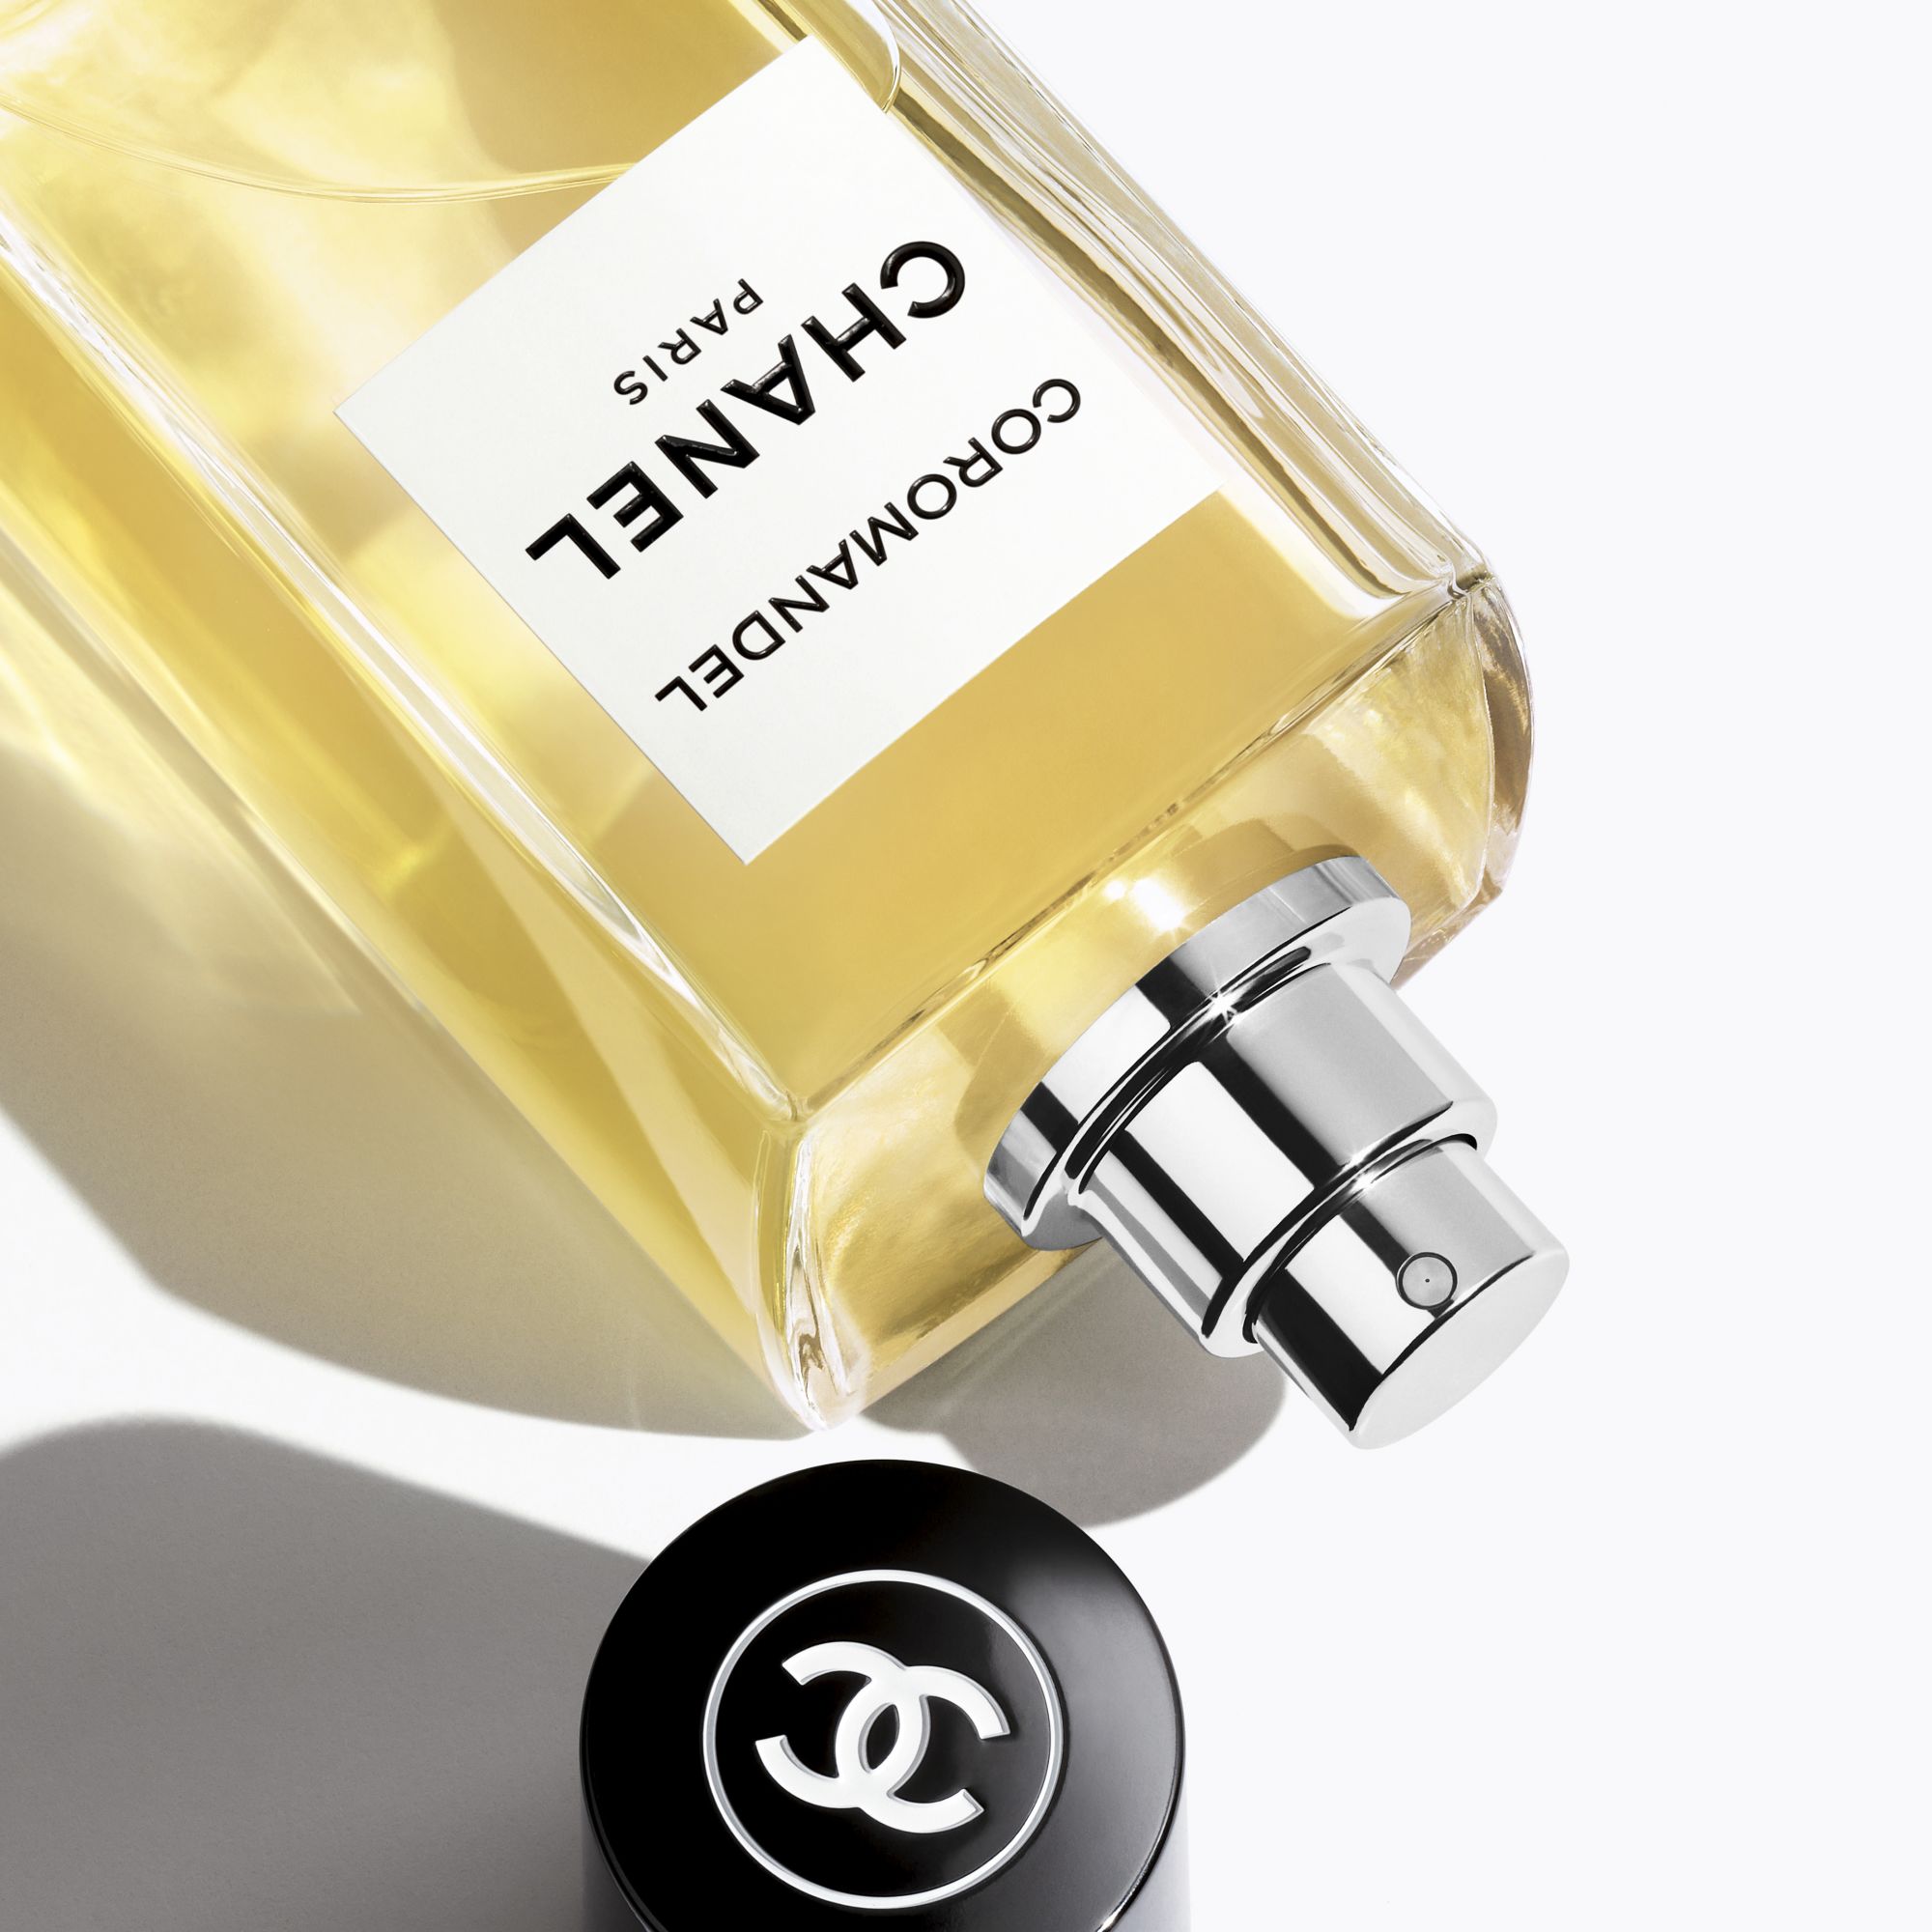 Chanel Les Exclusifs de Chanel Coromandel - Eau de Parfum